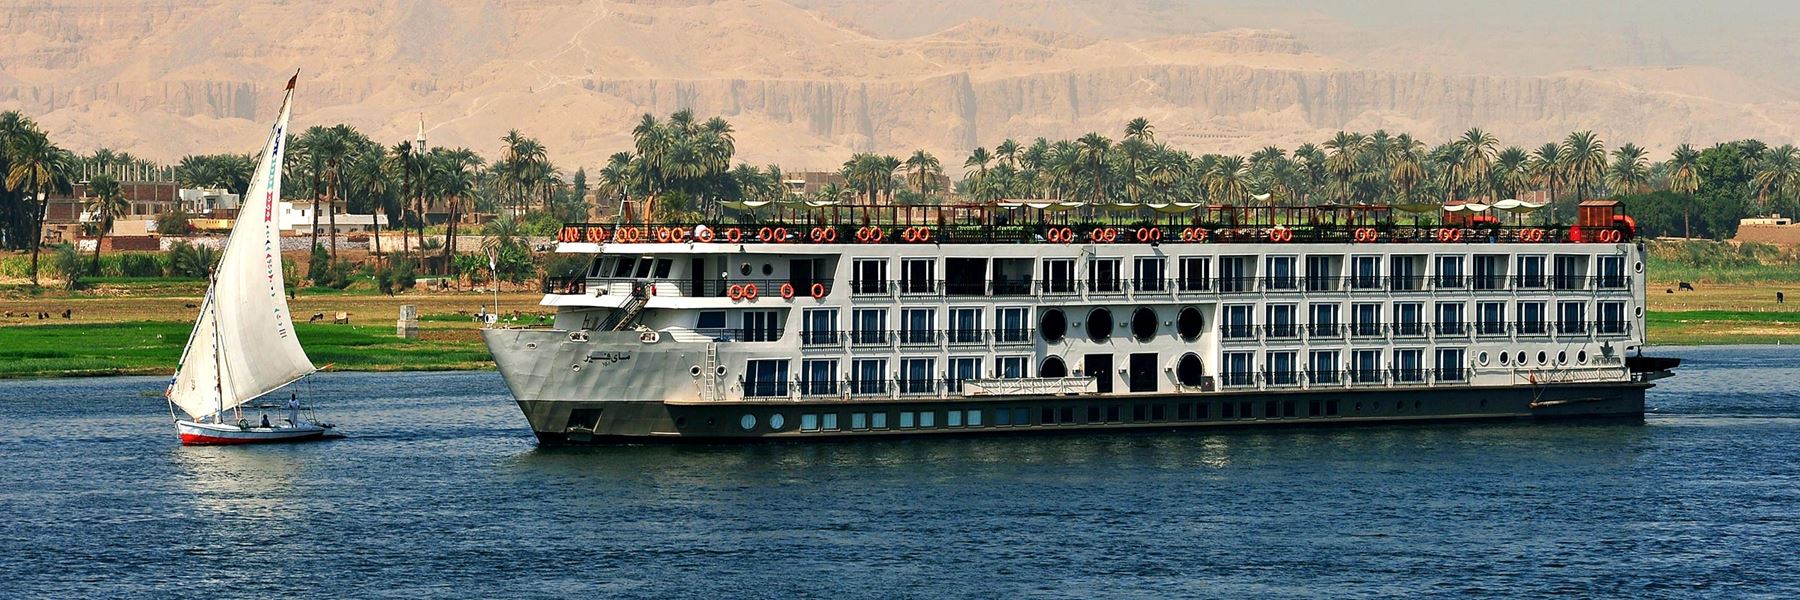 Nile River Cruise | Egypt Nile cruise packages | Nile Cruises 2020 - Misr Travel